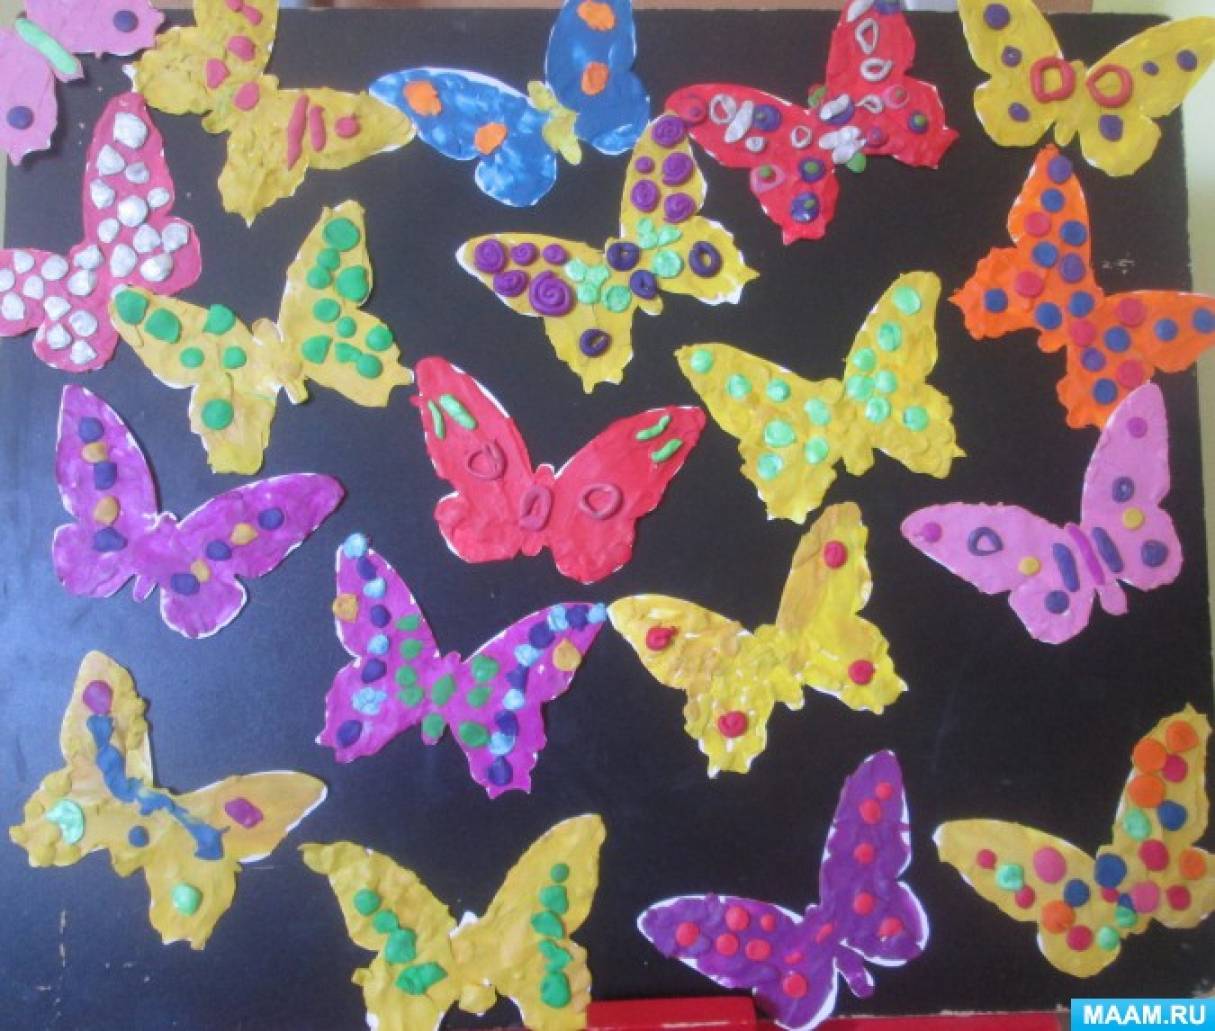 Занятие бабочки средняя группа. Рисование пластилином бабочка. Коллективное панно бабочки. Пластилинография бабочка в средней группе. Пластилинография бабочка в младшей группе.